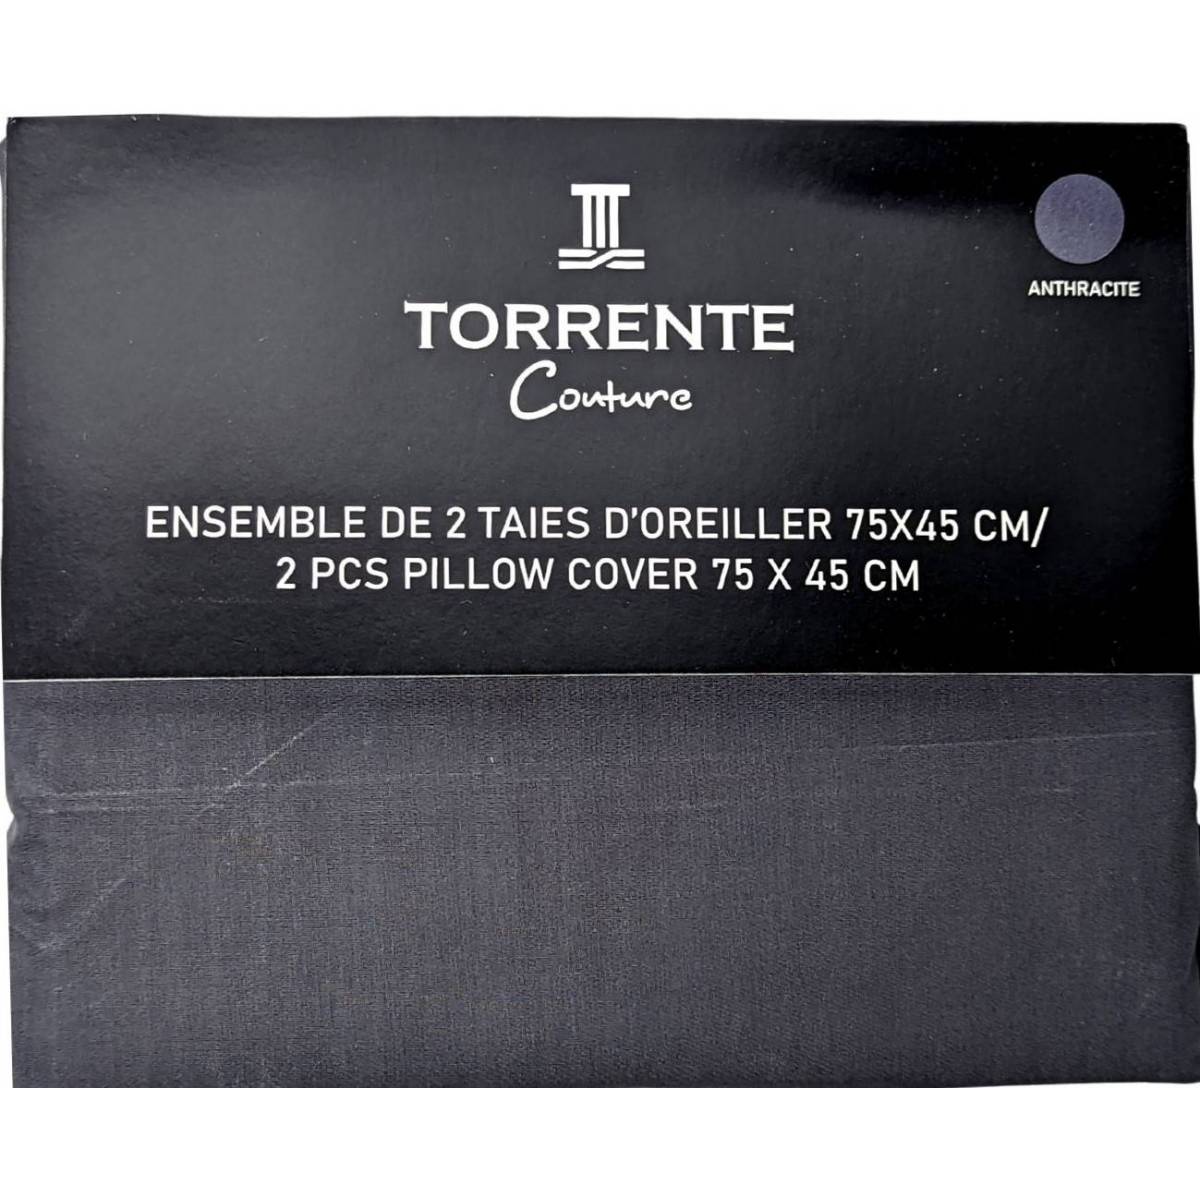 Pillowcase Torrente Anthracite 75 x 45 cm